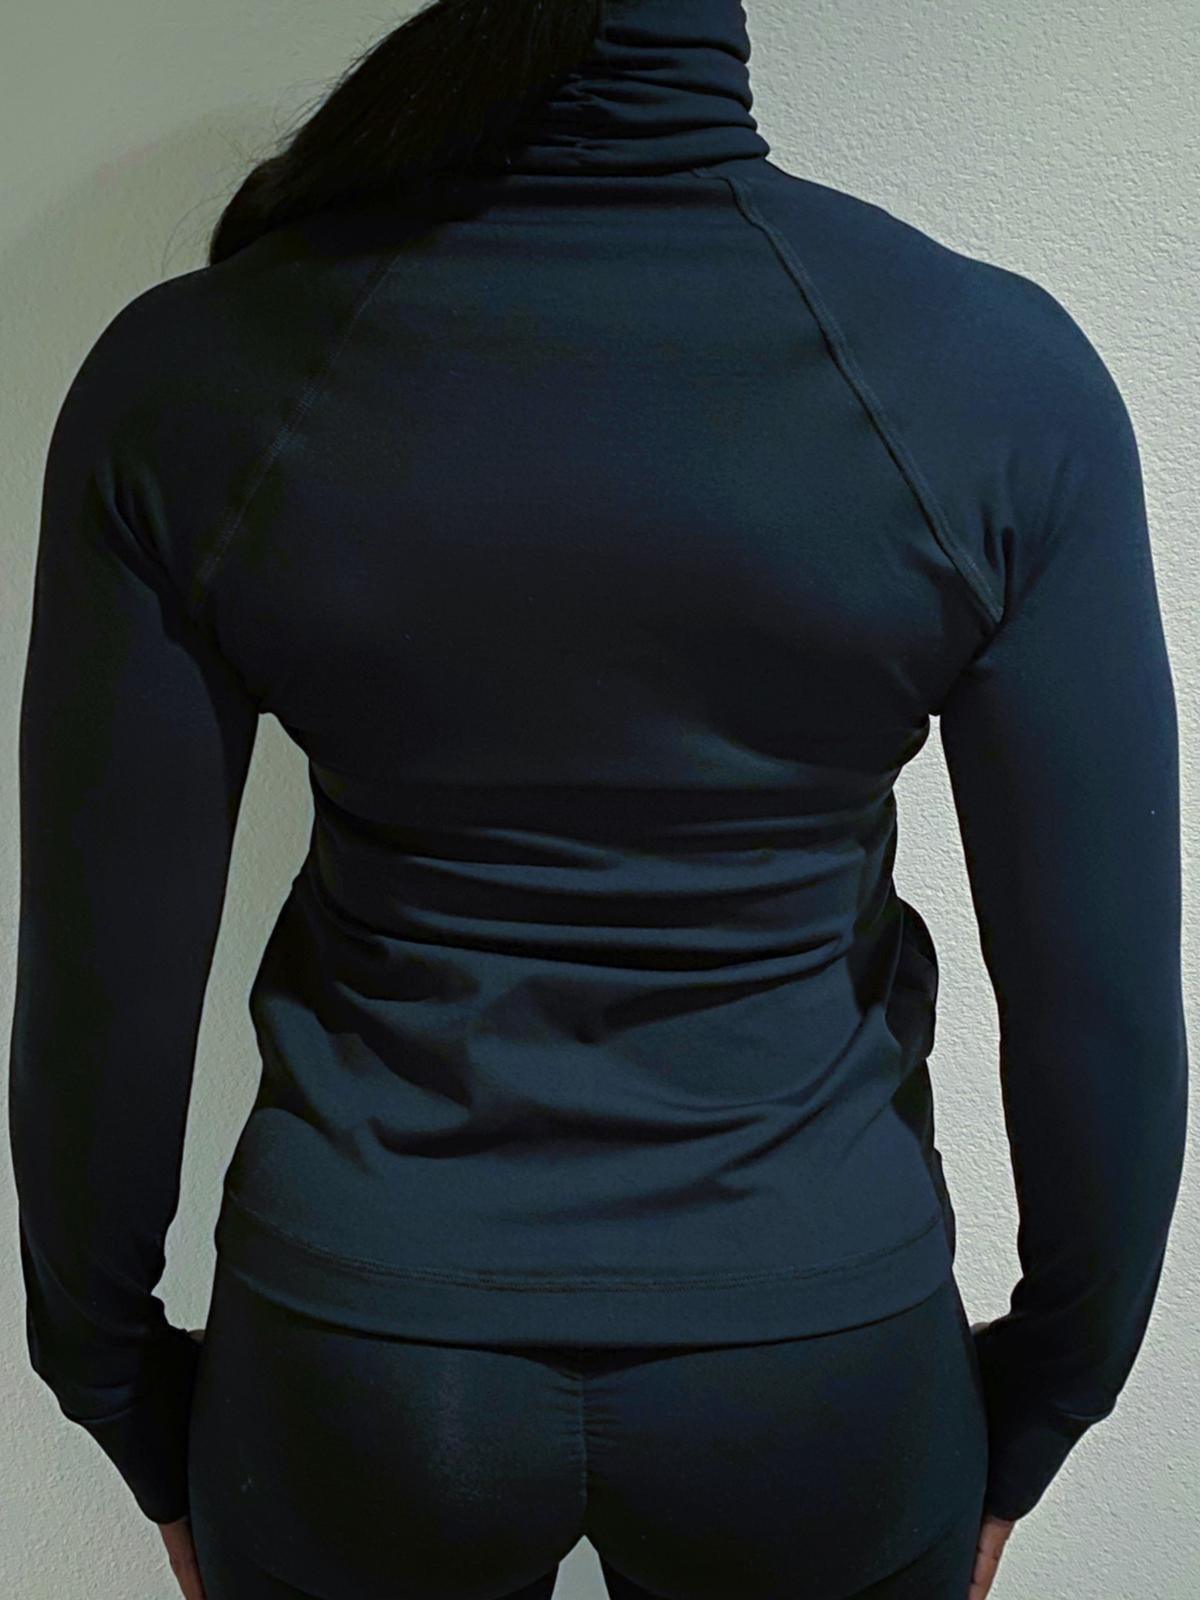 BBV Black Jacket - Shop Alis Sportswear